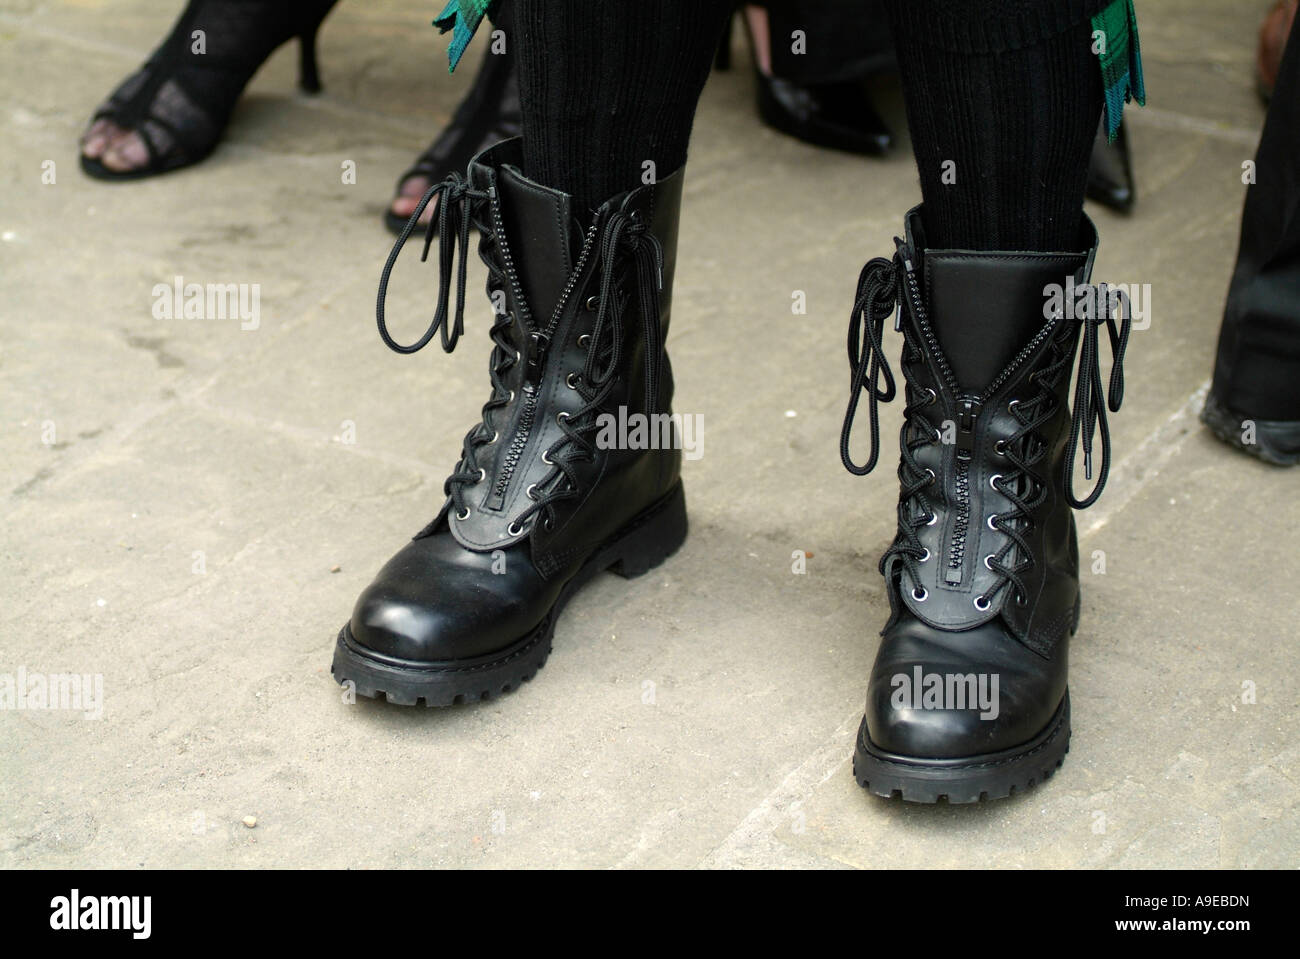 Heavy boots immagini e fotografie stock ad alta risoluzione - Alamy